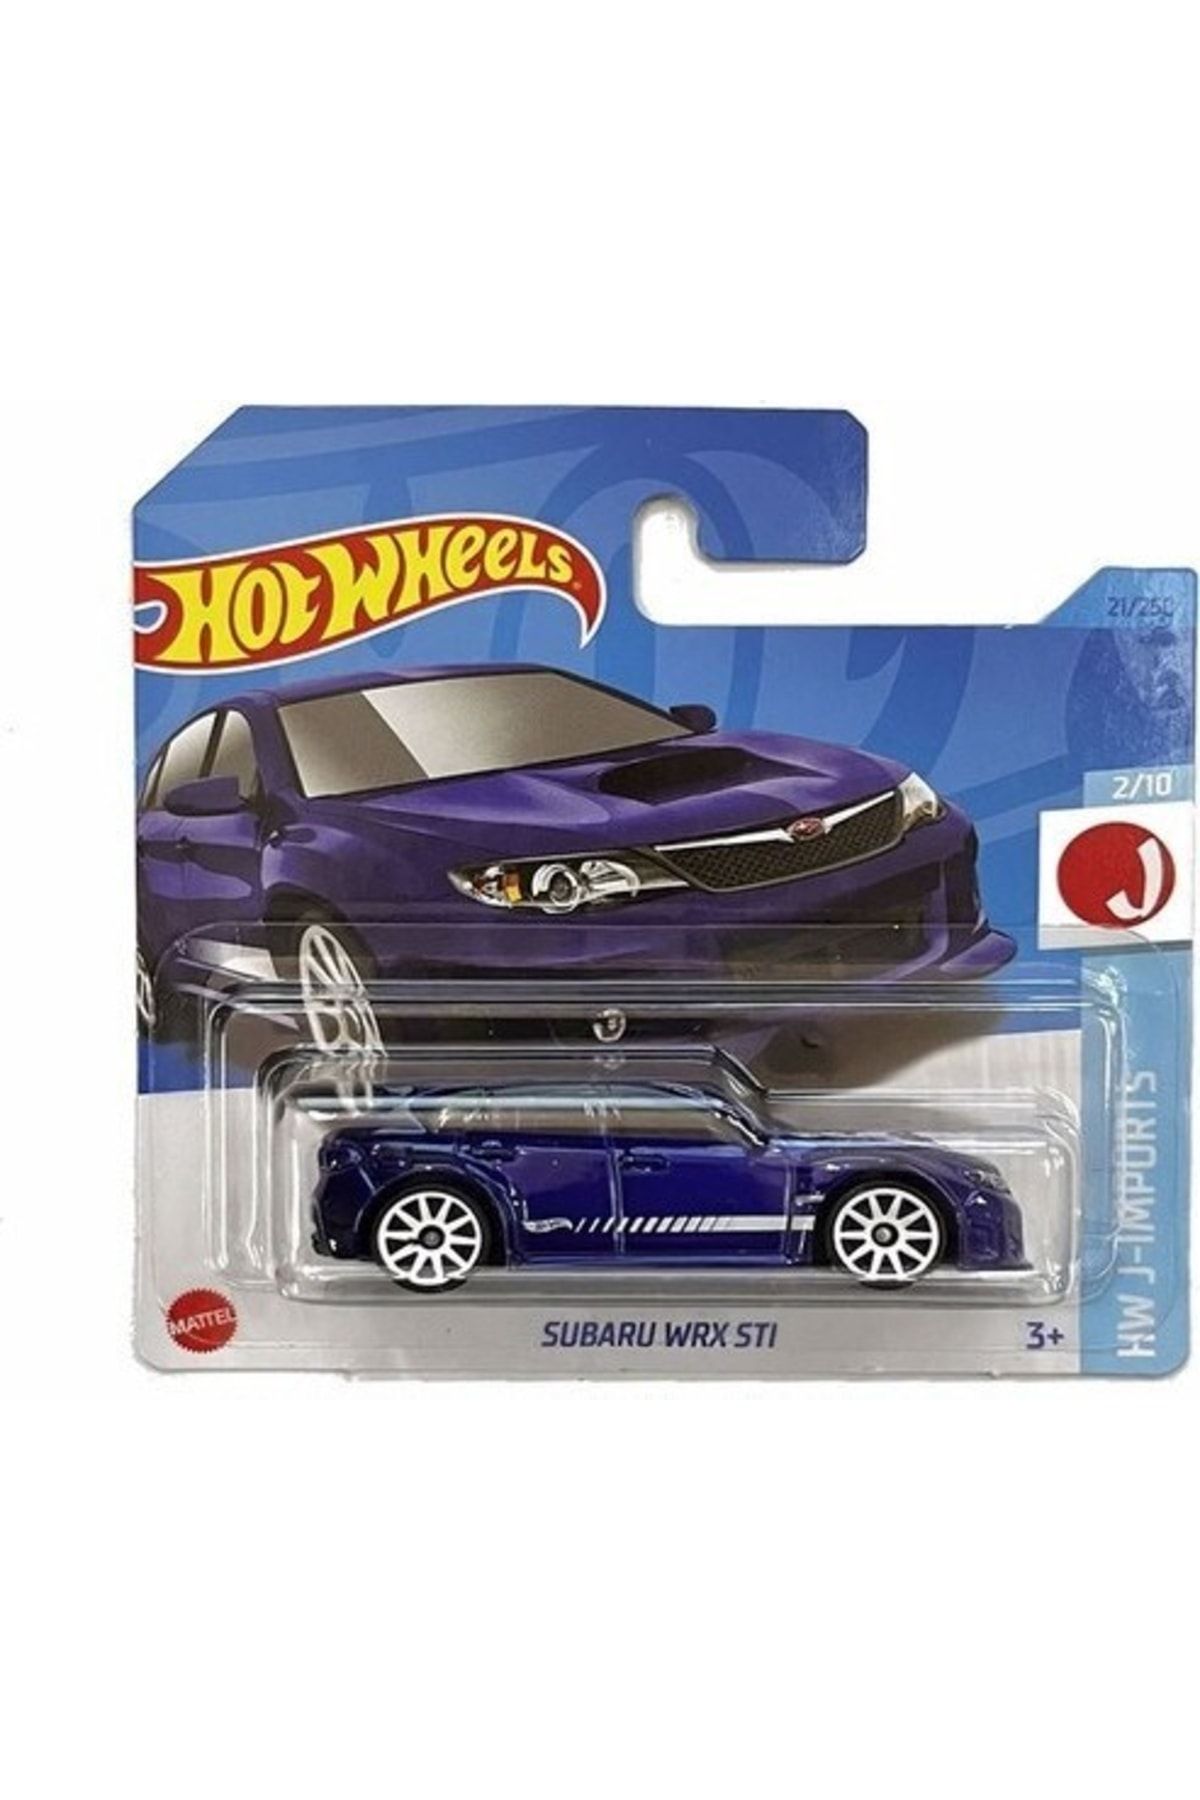 HOT WHEELS Hotwheels Hot Wheels Subaru Wrx Sti Purple-HKJ10